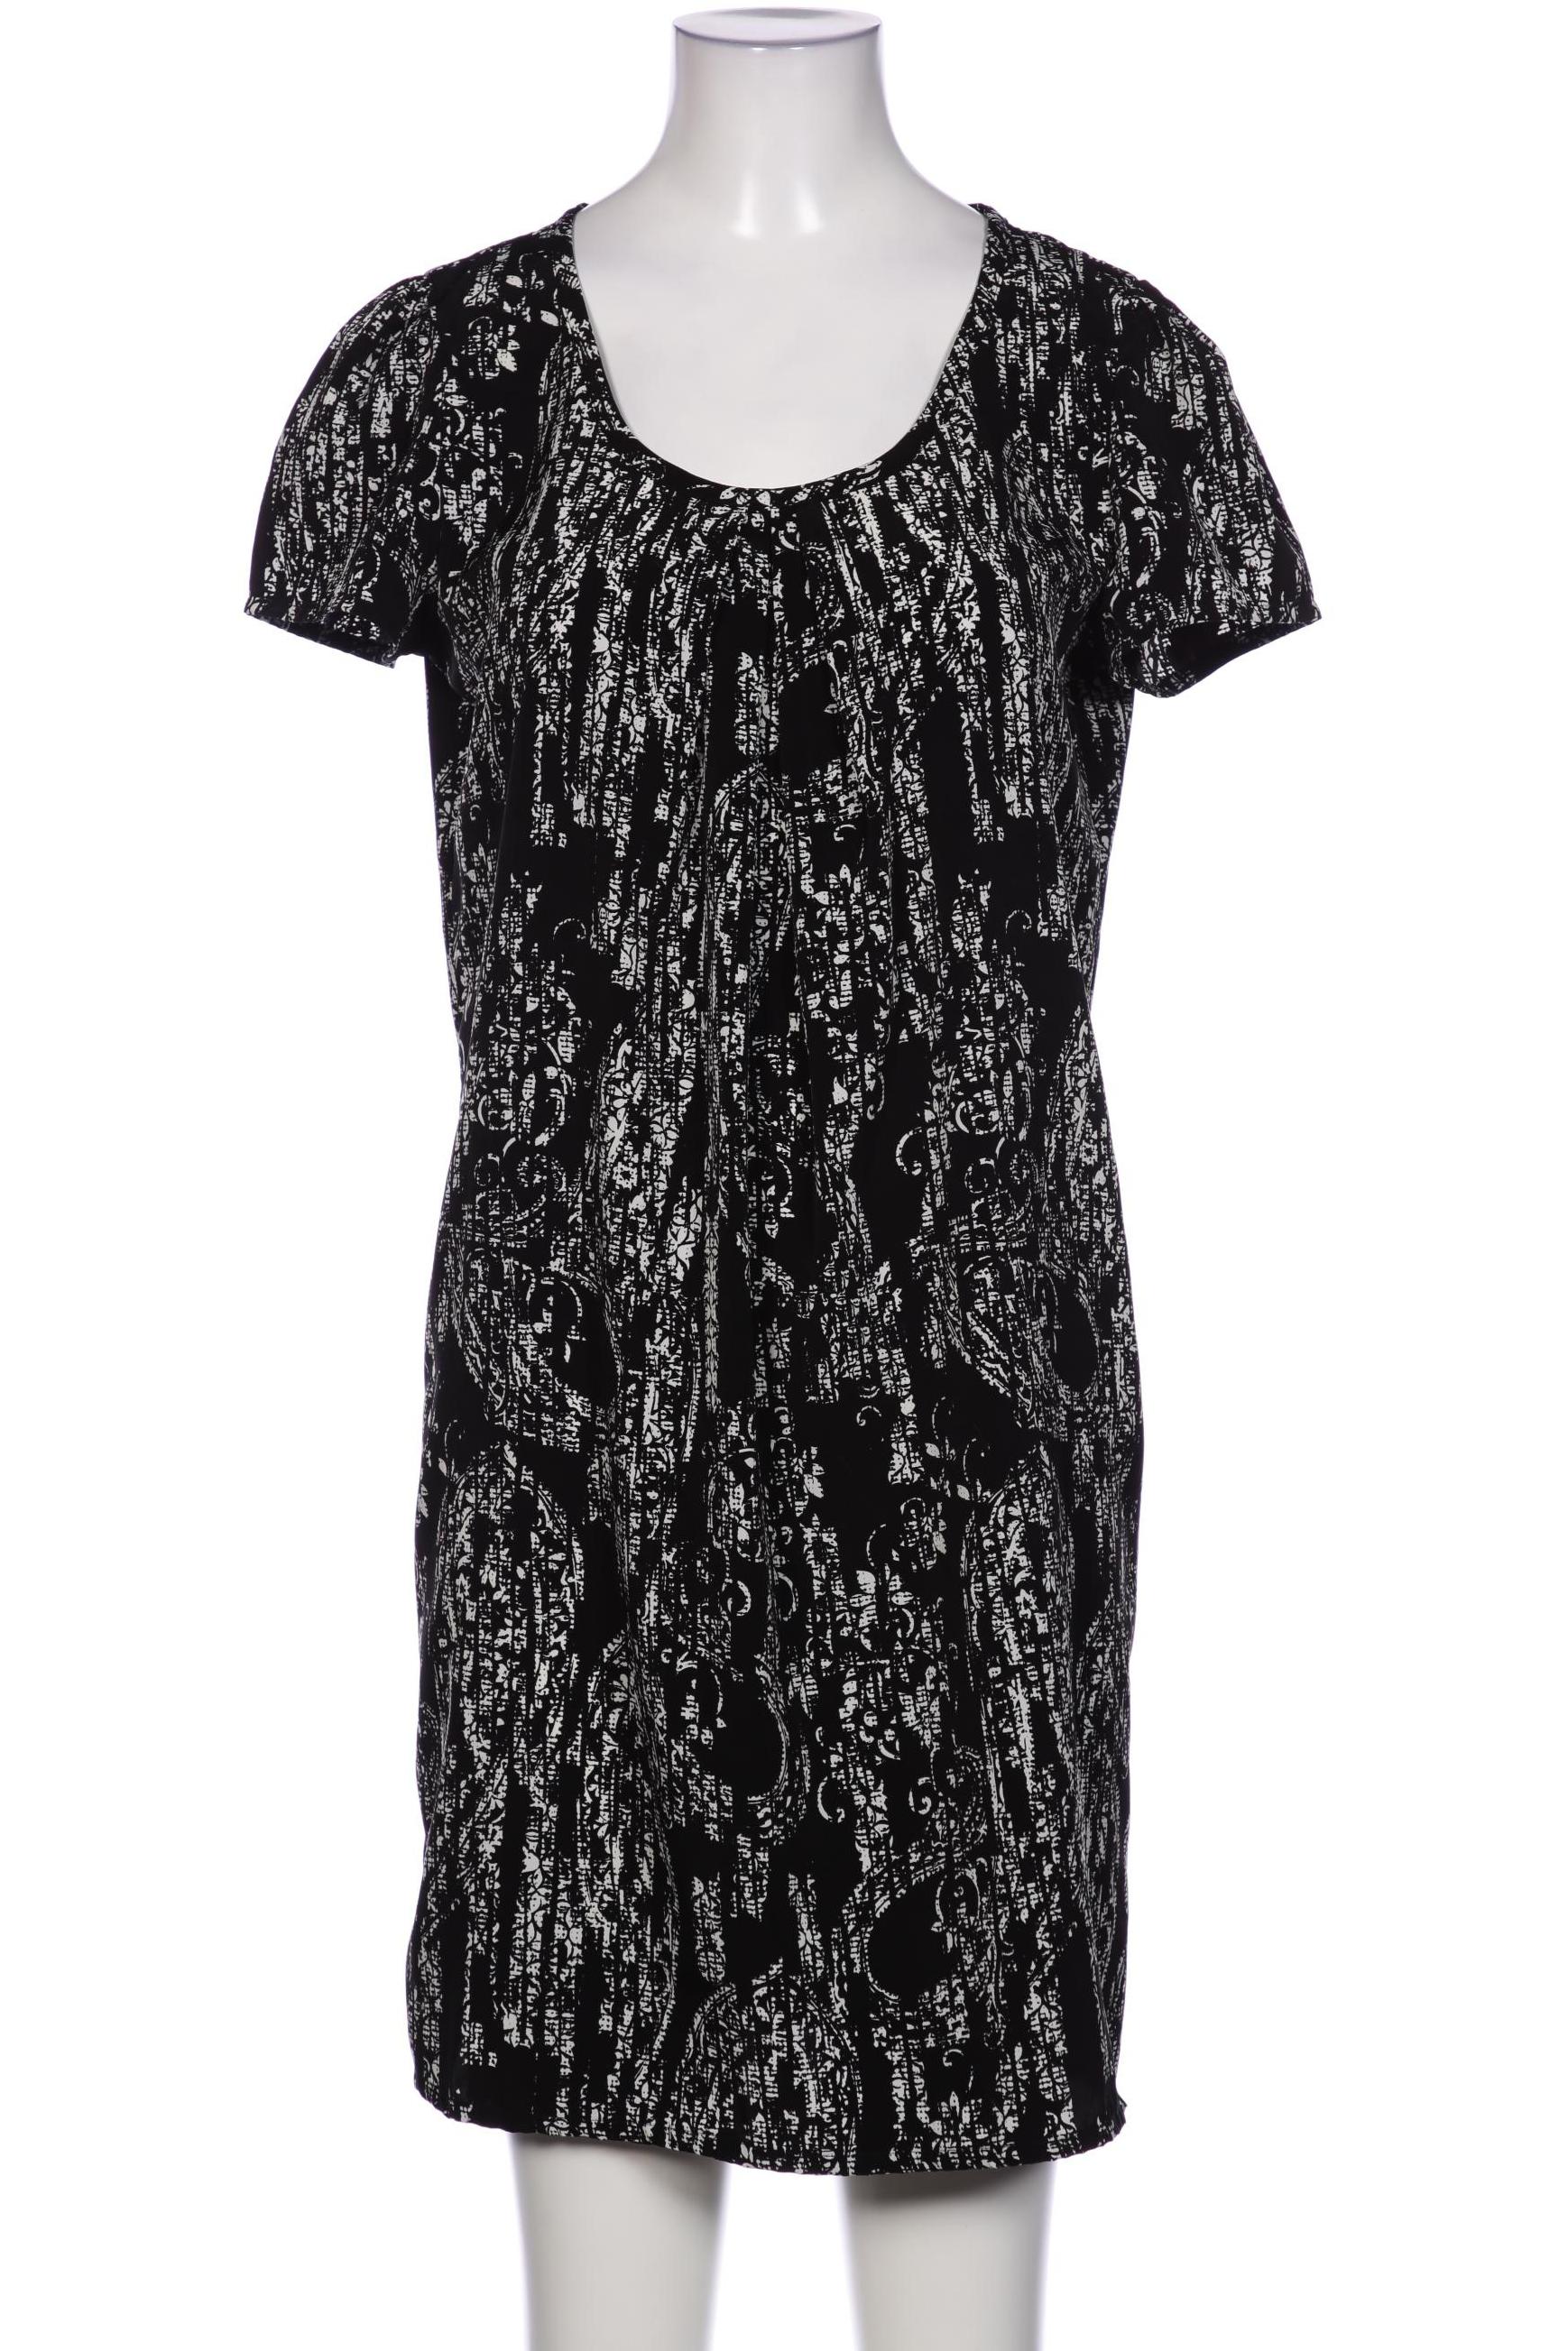 UNITED COLORS OF BENETTON Damen Kleid, schwarz von United Colors of Benetton